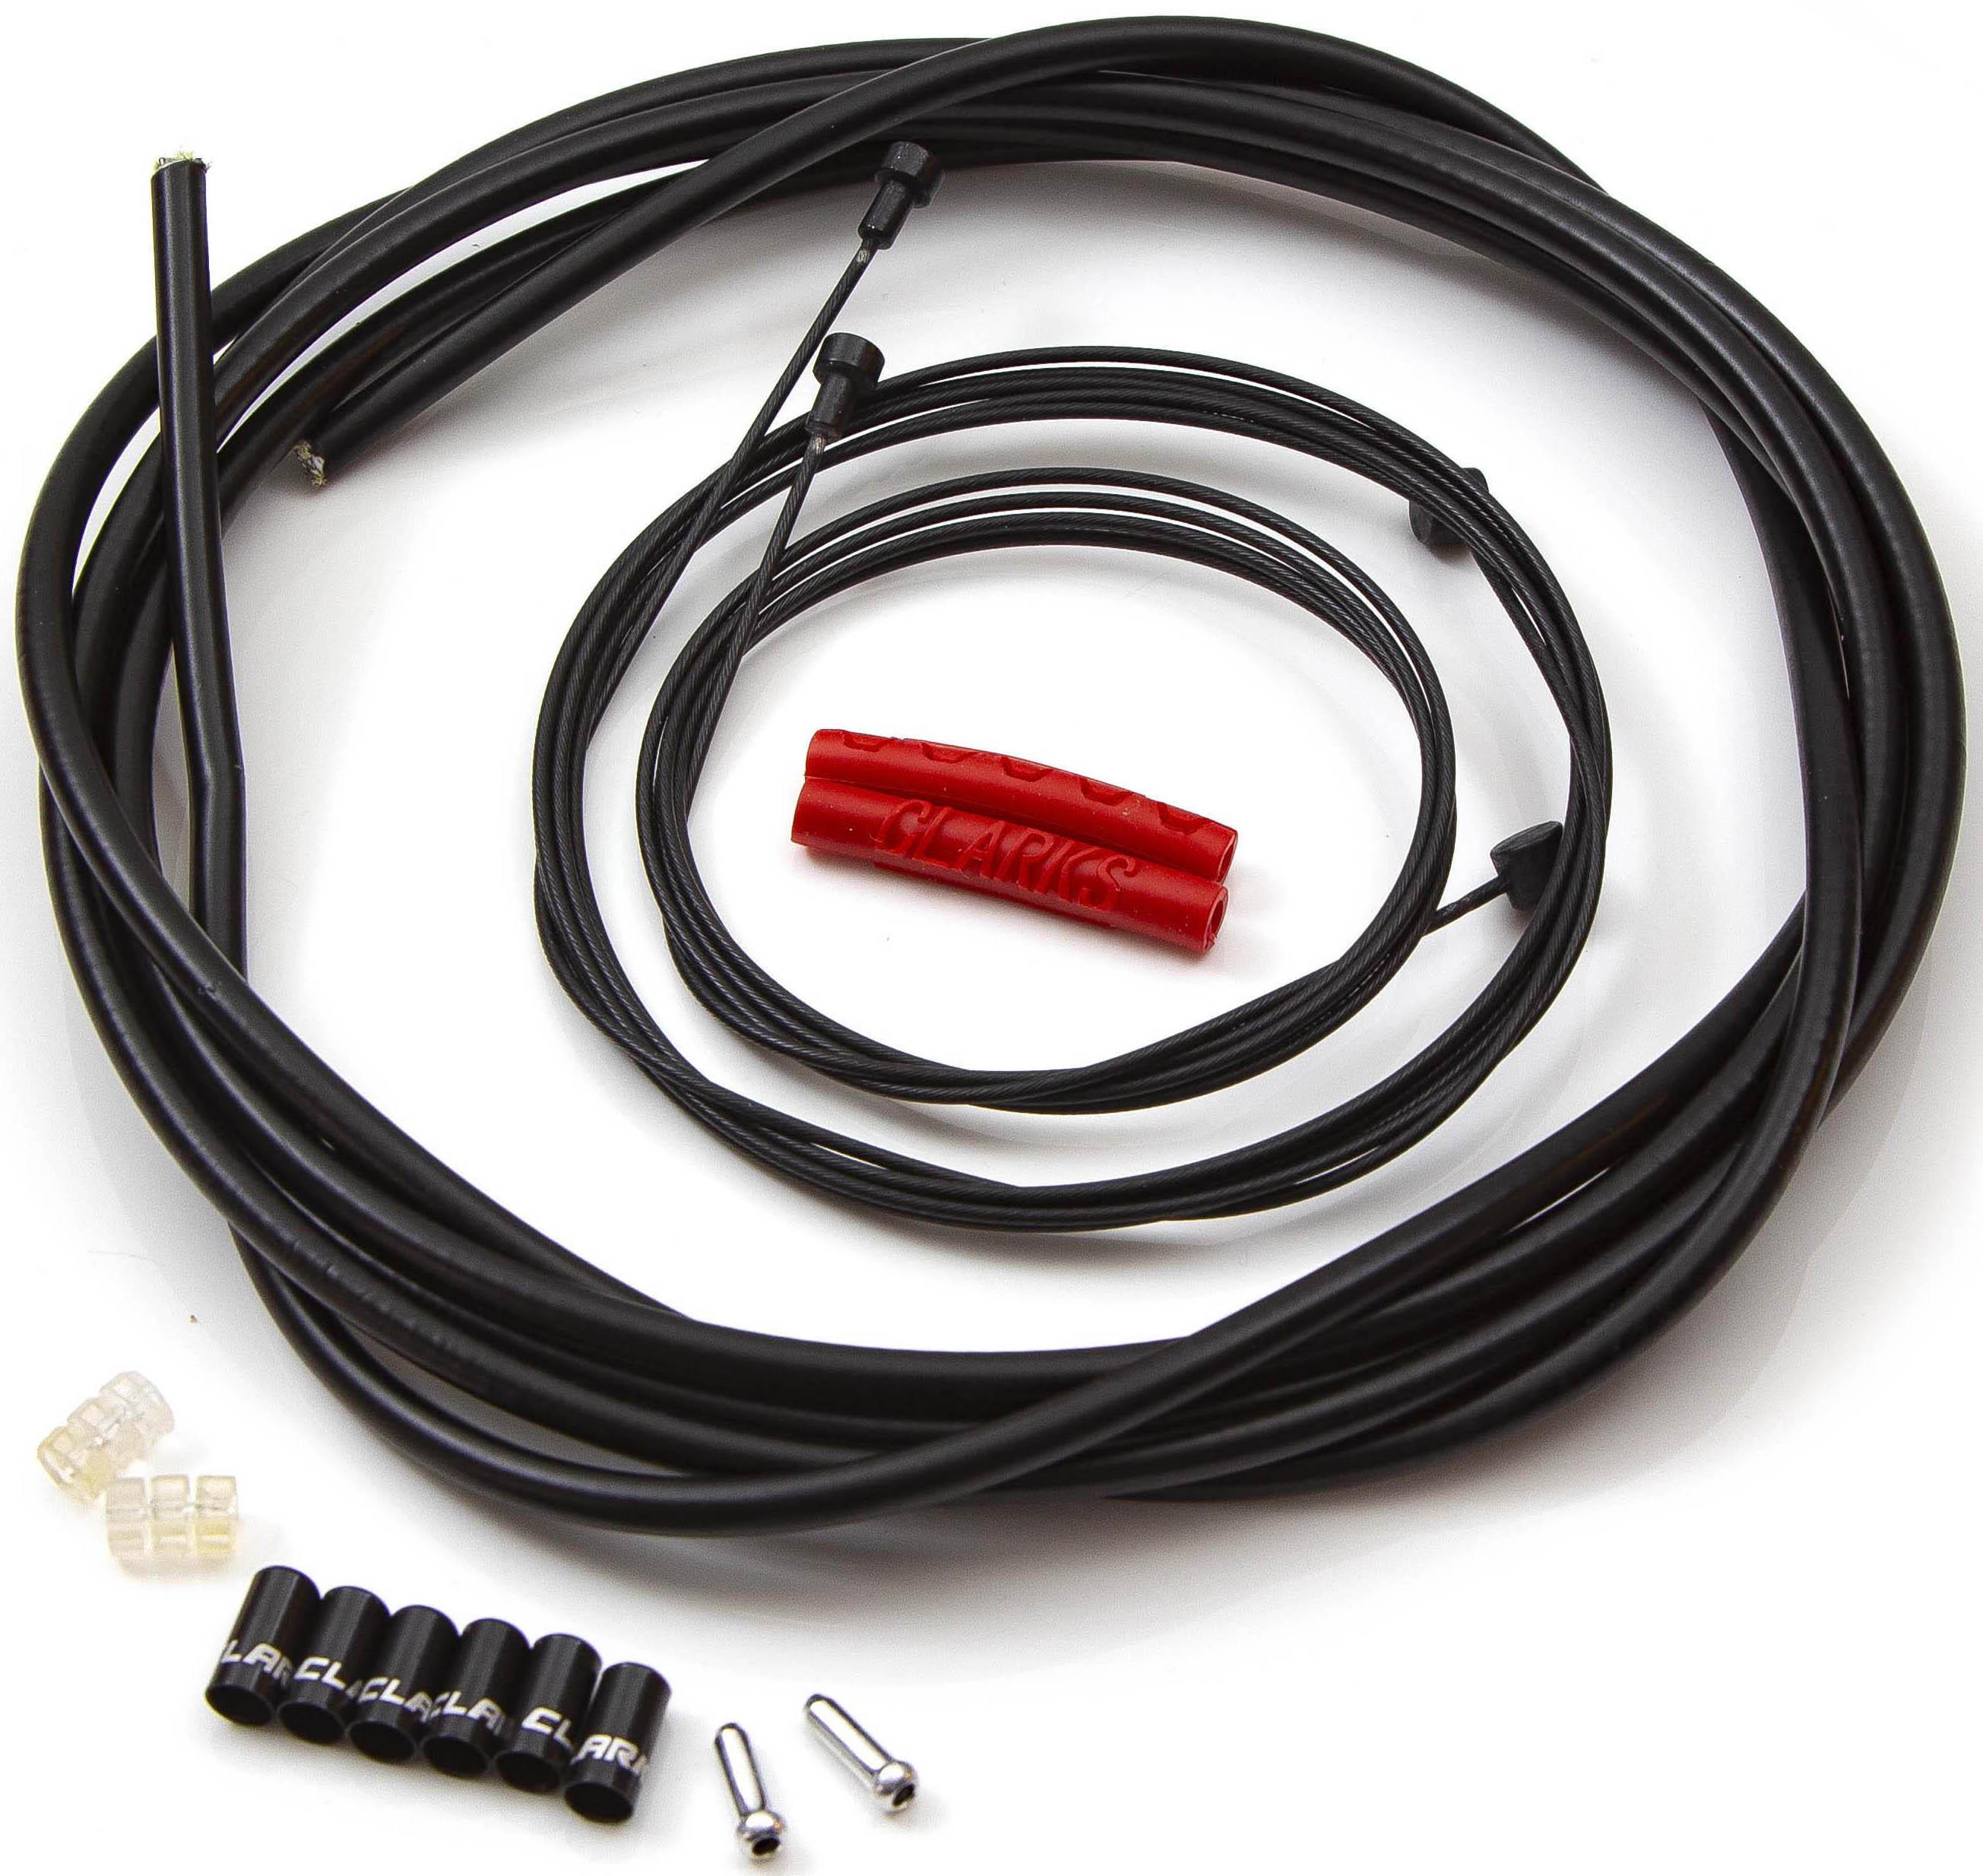 Clarks Teflon Cable Kit